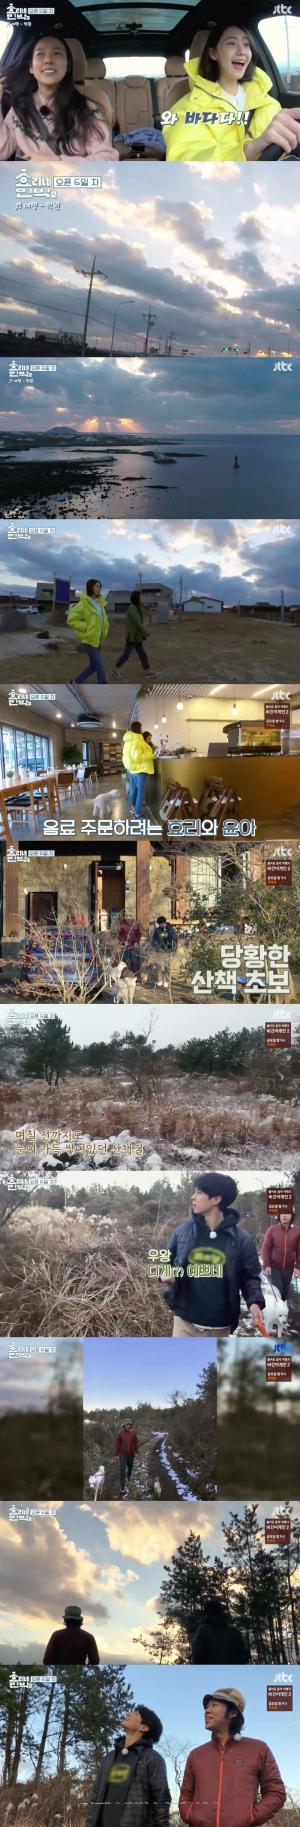 ‘효리네민박 시즌2’ 이상순, 이효리, 윤아, 박보검의 산책길에서 만나는 제주